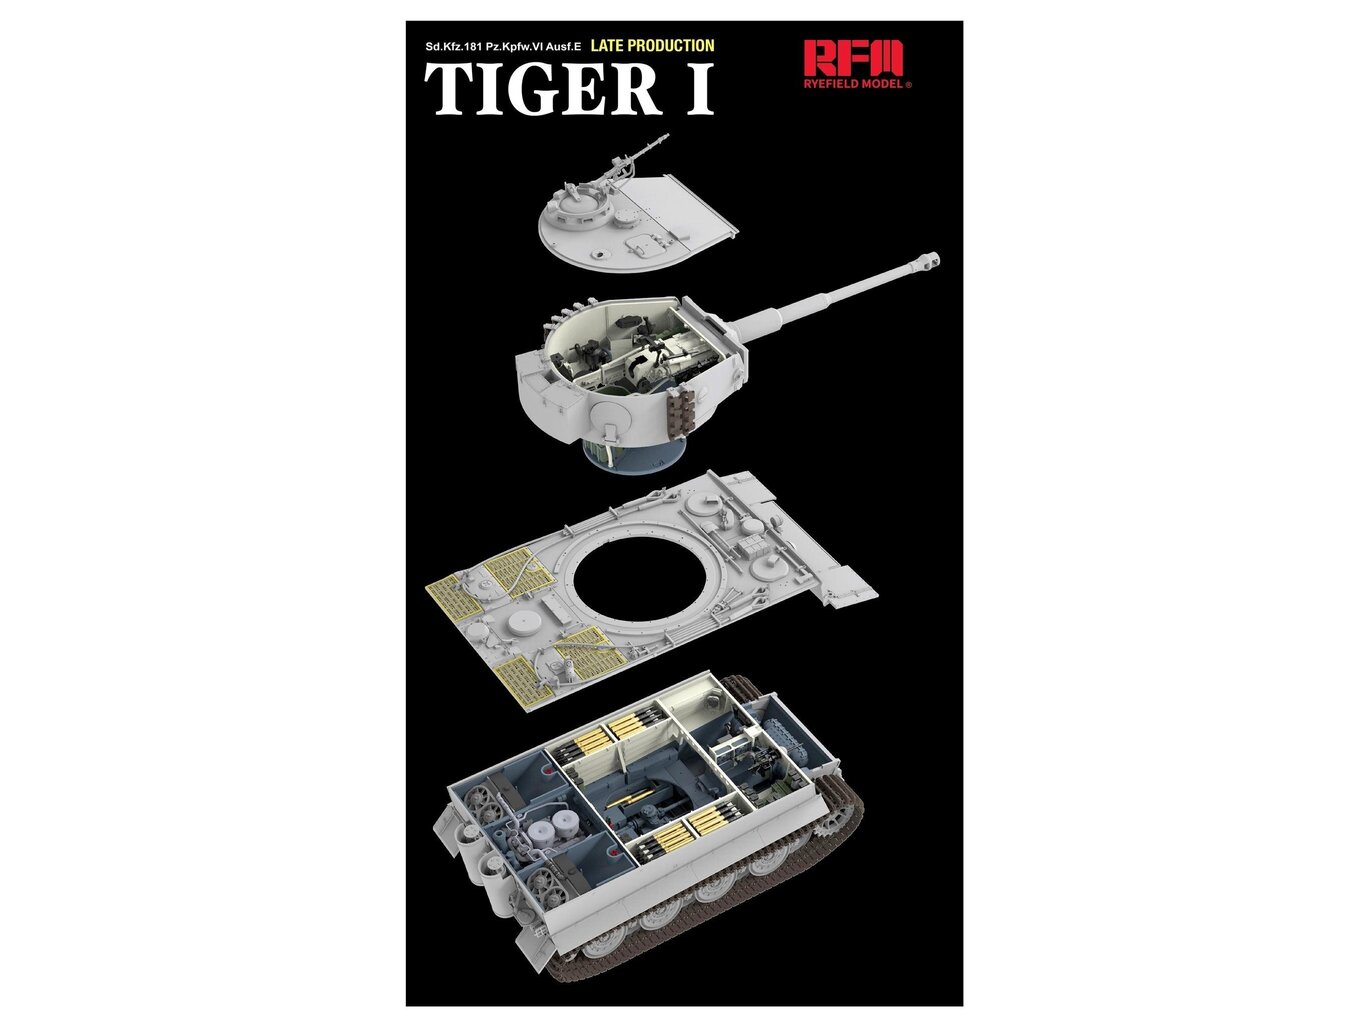 Surenkamas modelis Rye Field Model - Sd.Kfz.181 Pz.Kpfw.VI Ausf.E Tiger I Late Production (full interior), 1/35, RFM-5080 kaina ir informacija | Konstruktoriai ir kaladėlės | pigu.lt